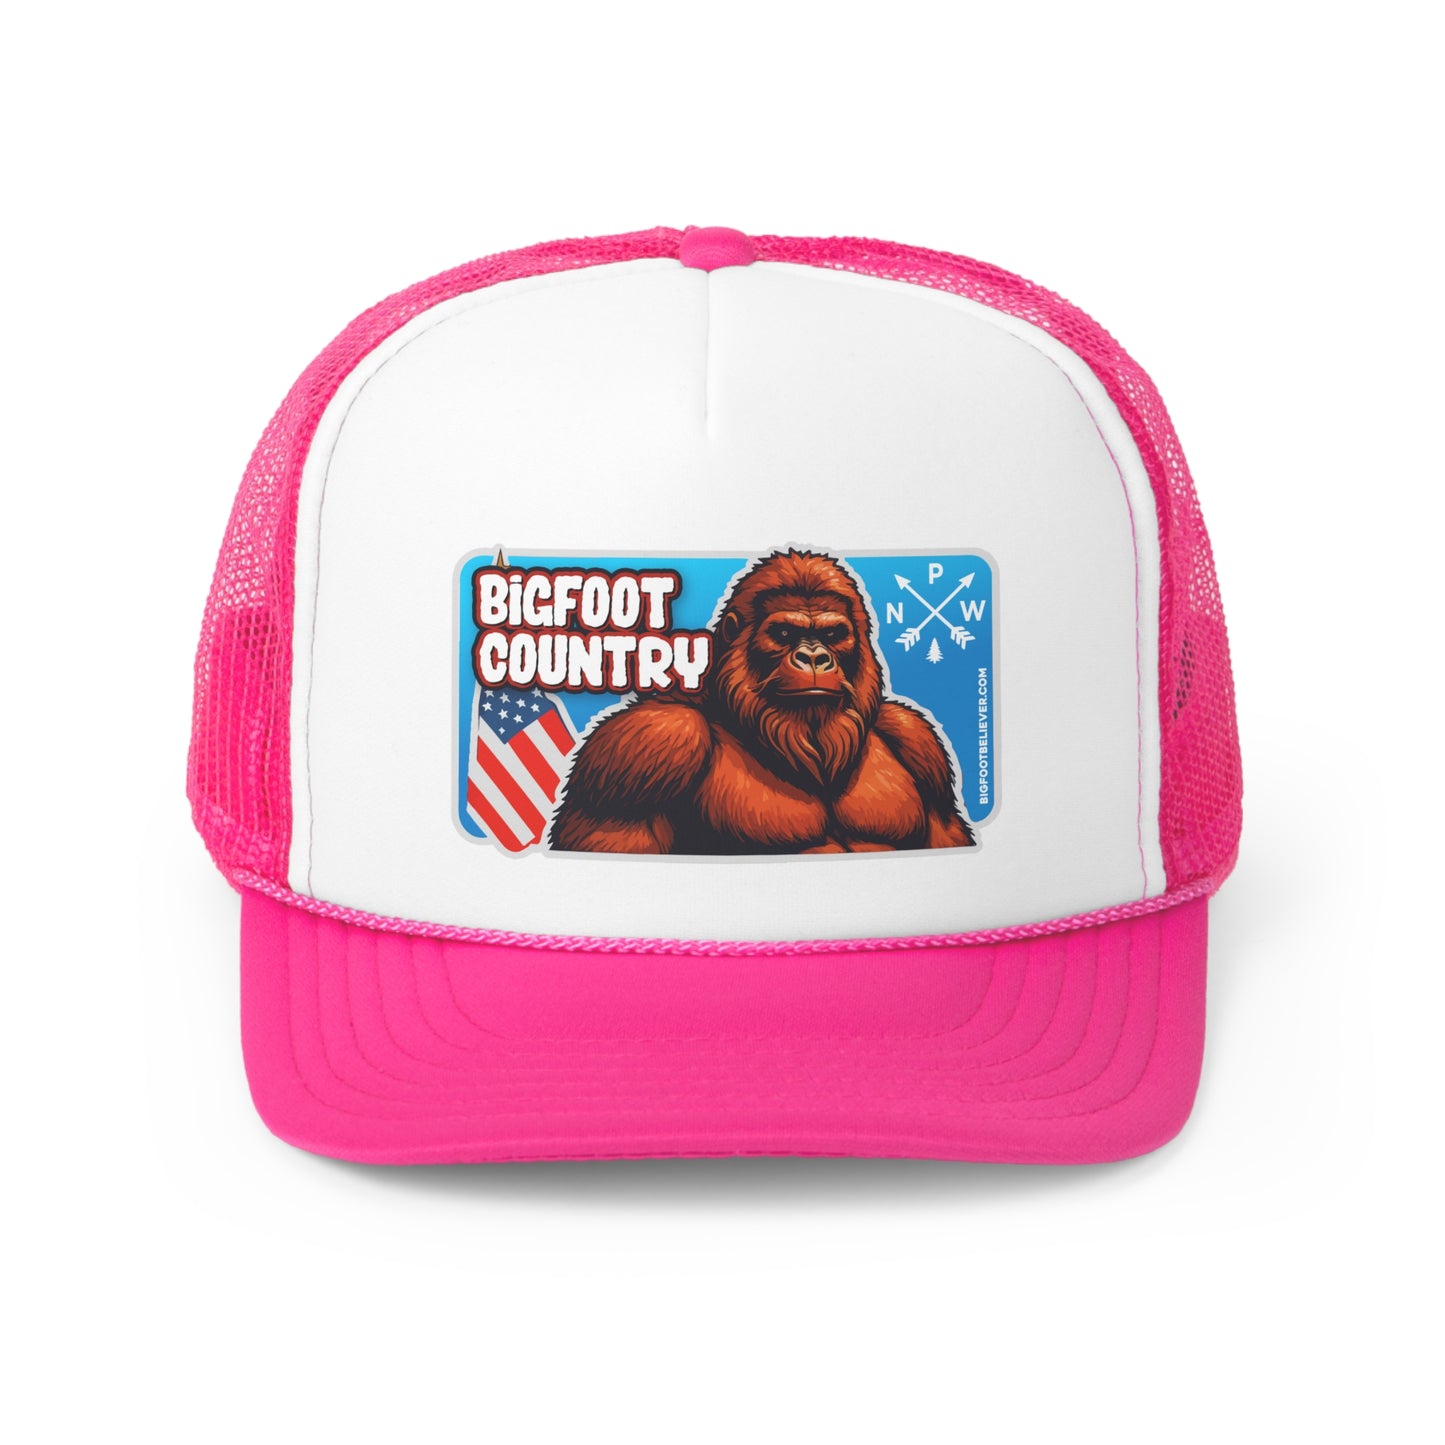 Bigfoot Country Trucker Caps